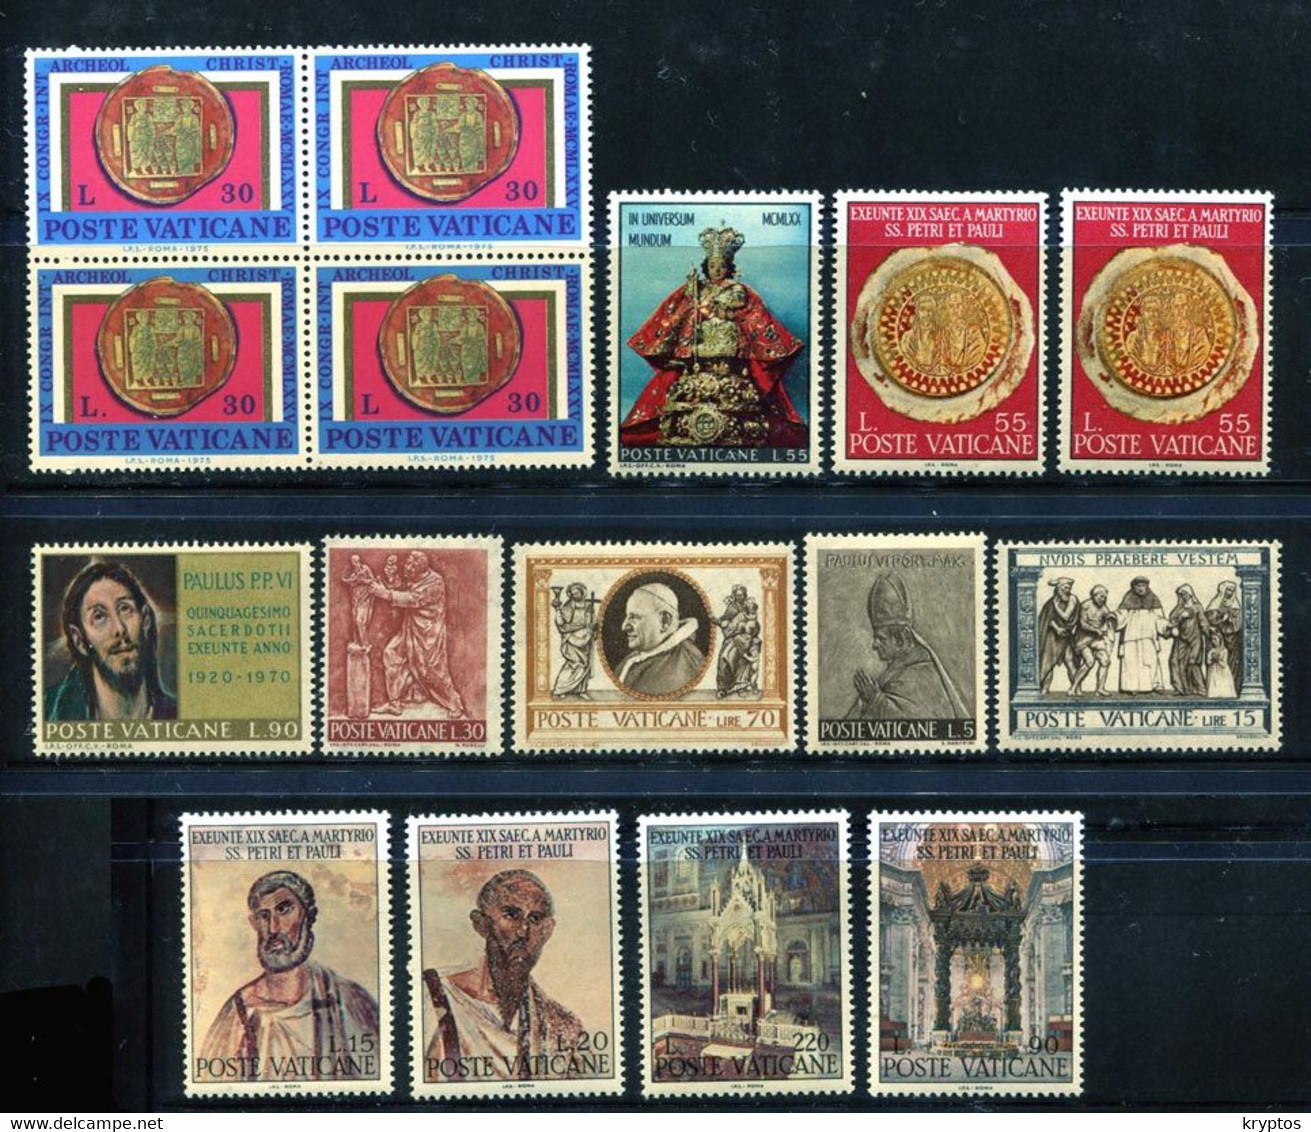 Vatican.. 16 Stamps. All MINT - Colecciones